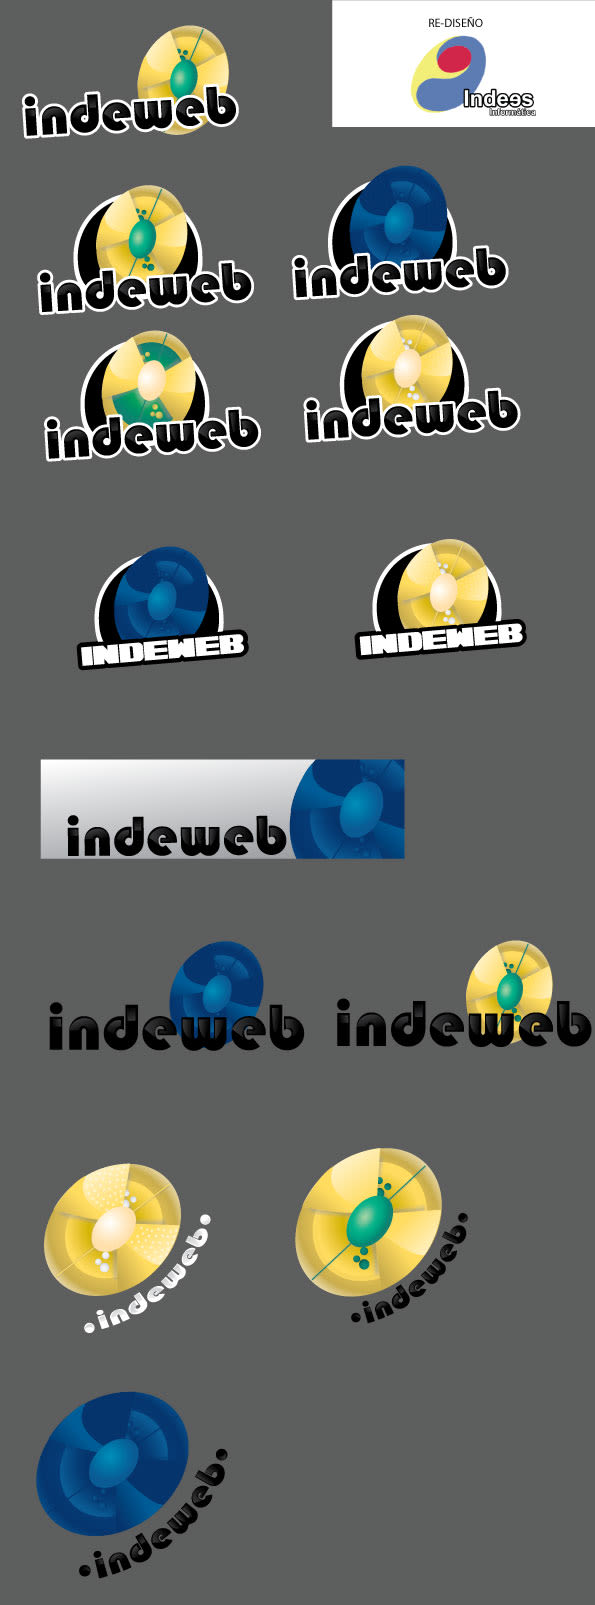 Logos 4